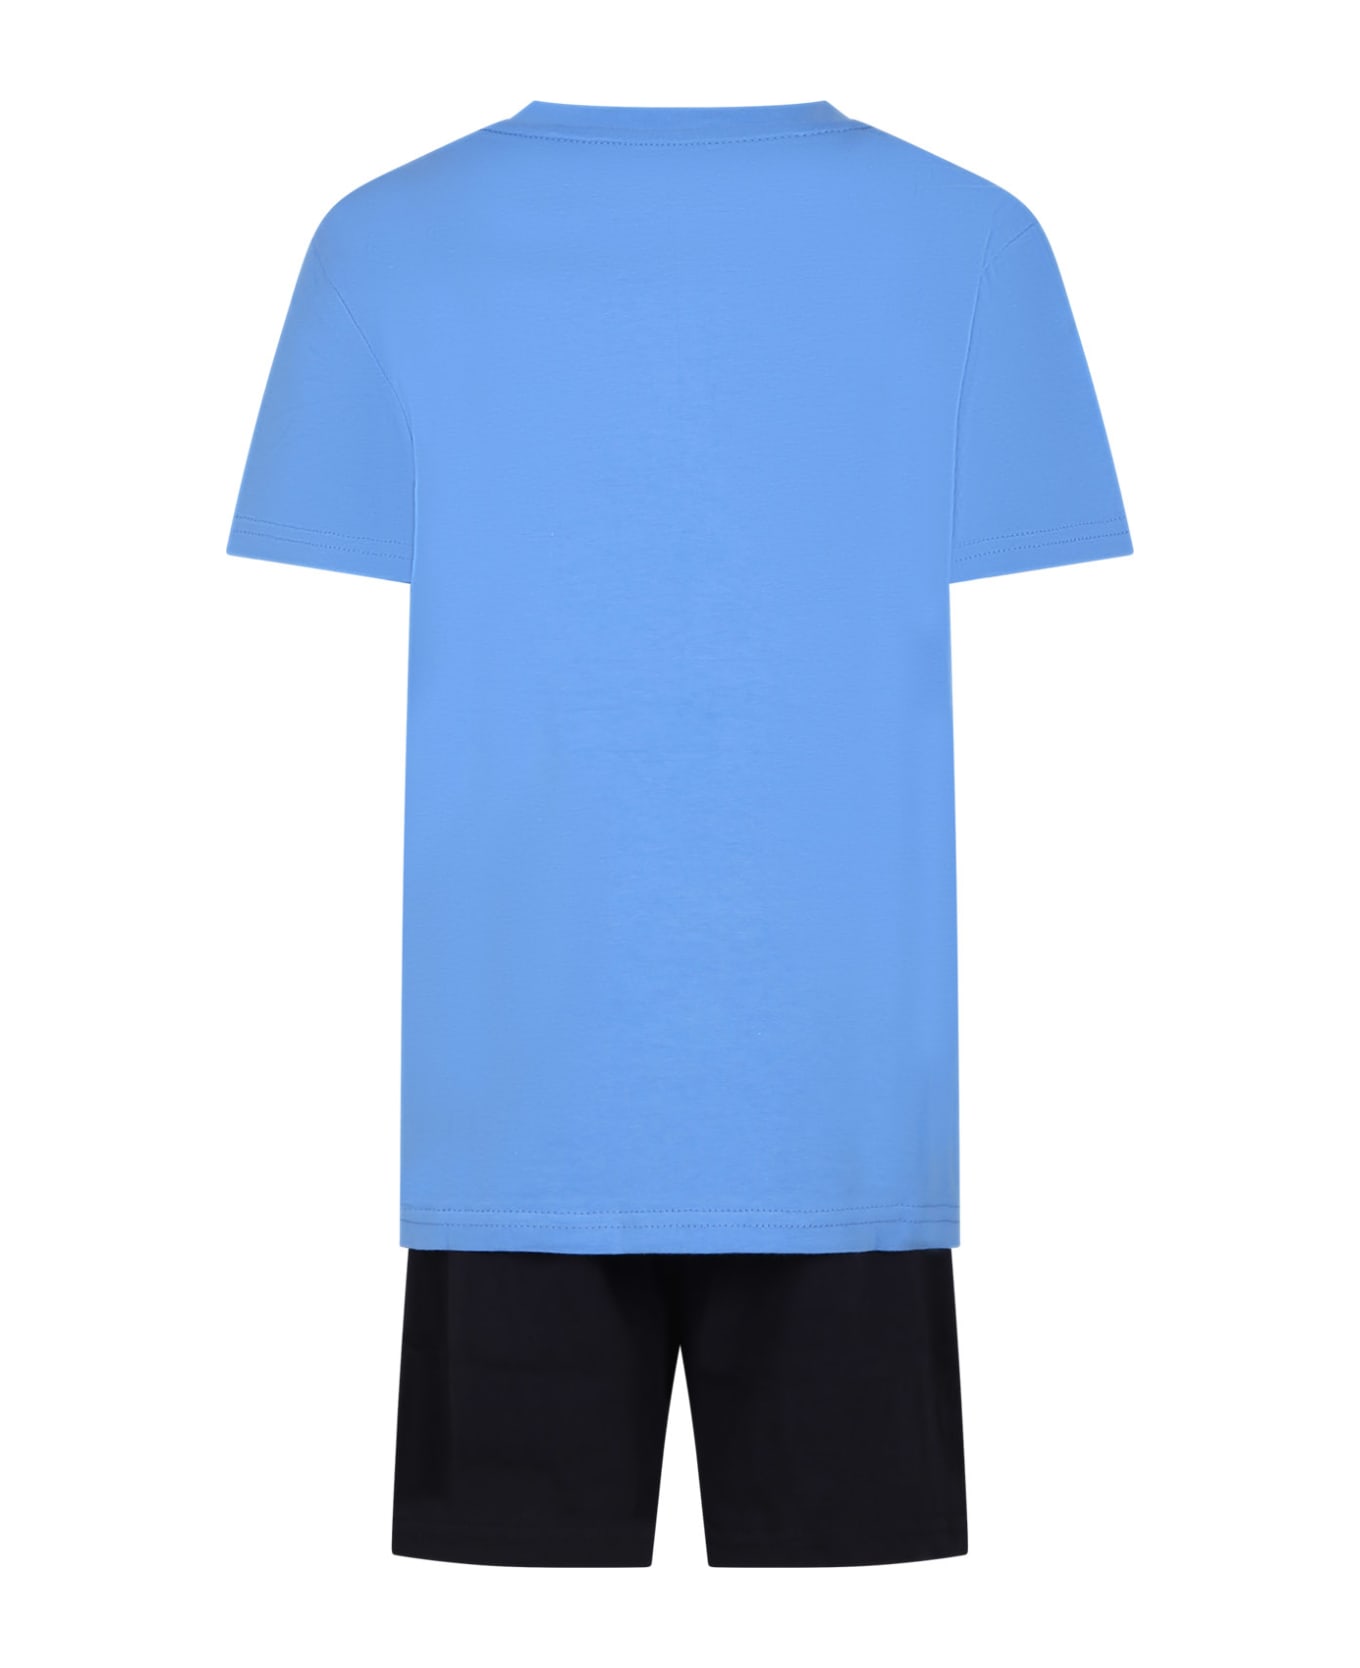 Tommy Hilfiger Multicolor Pajamas For Boy With Logo - Multicolor